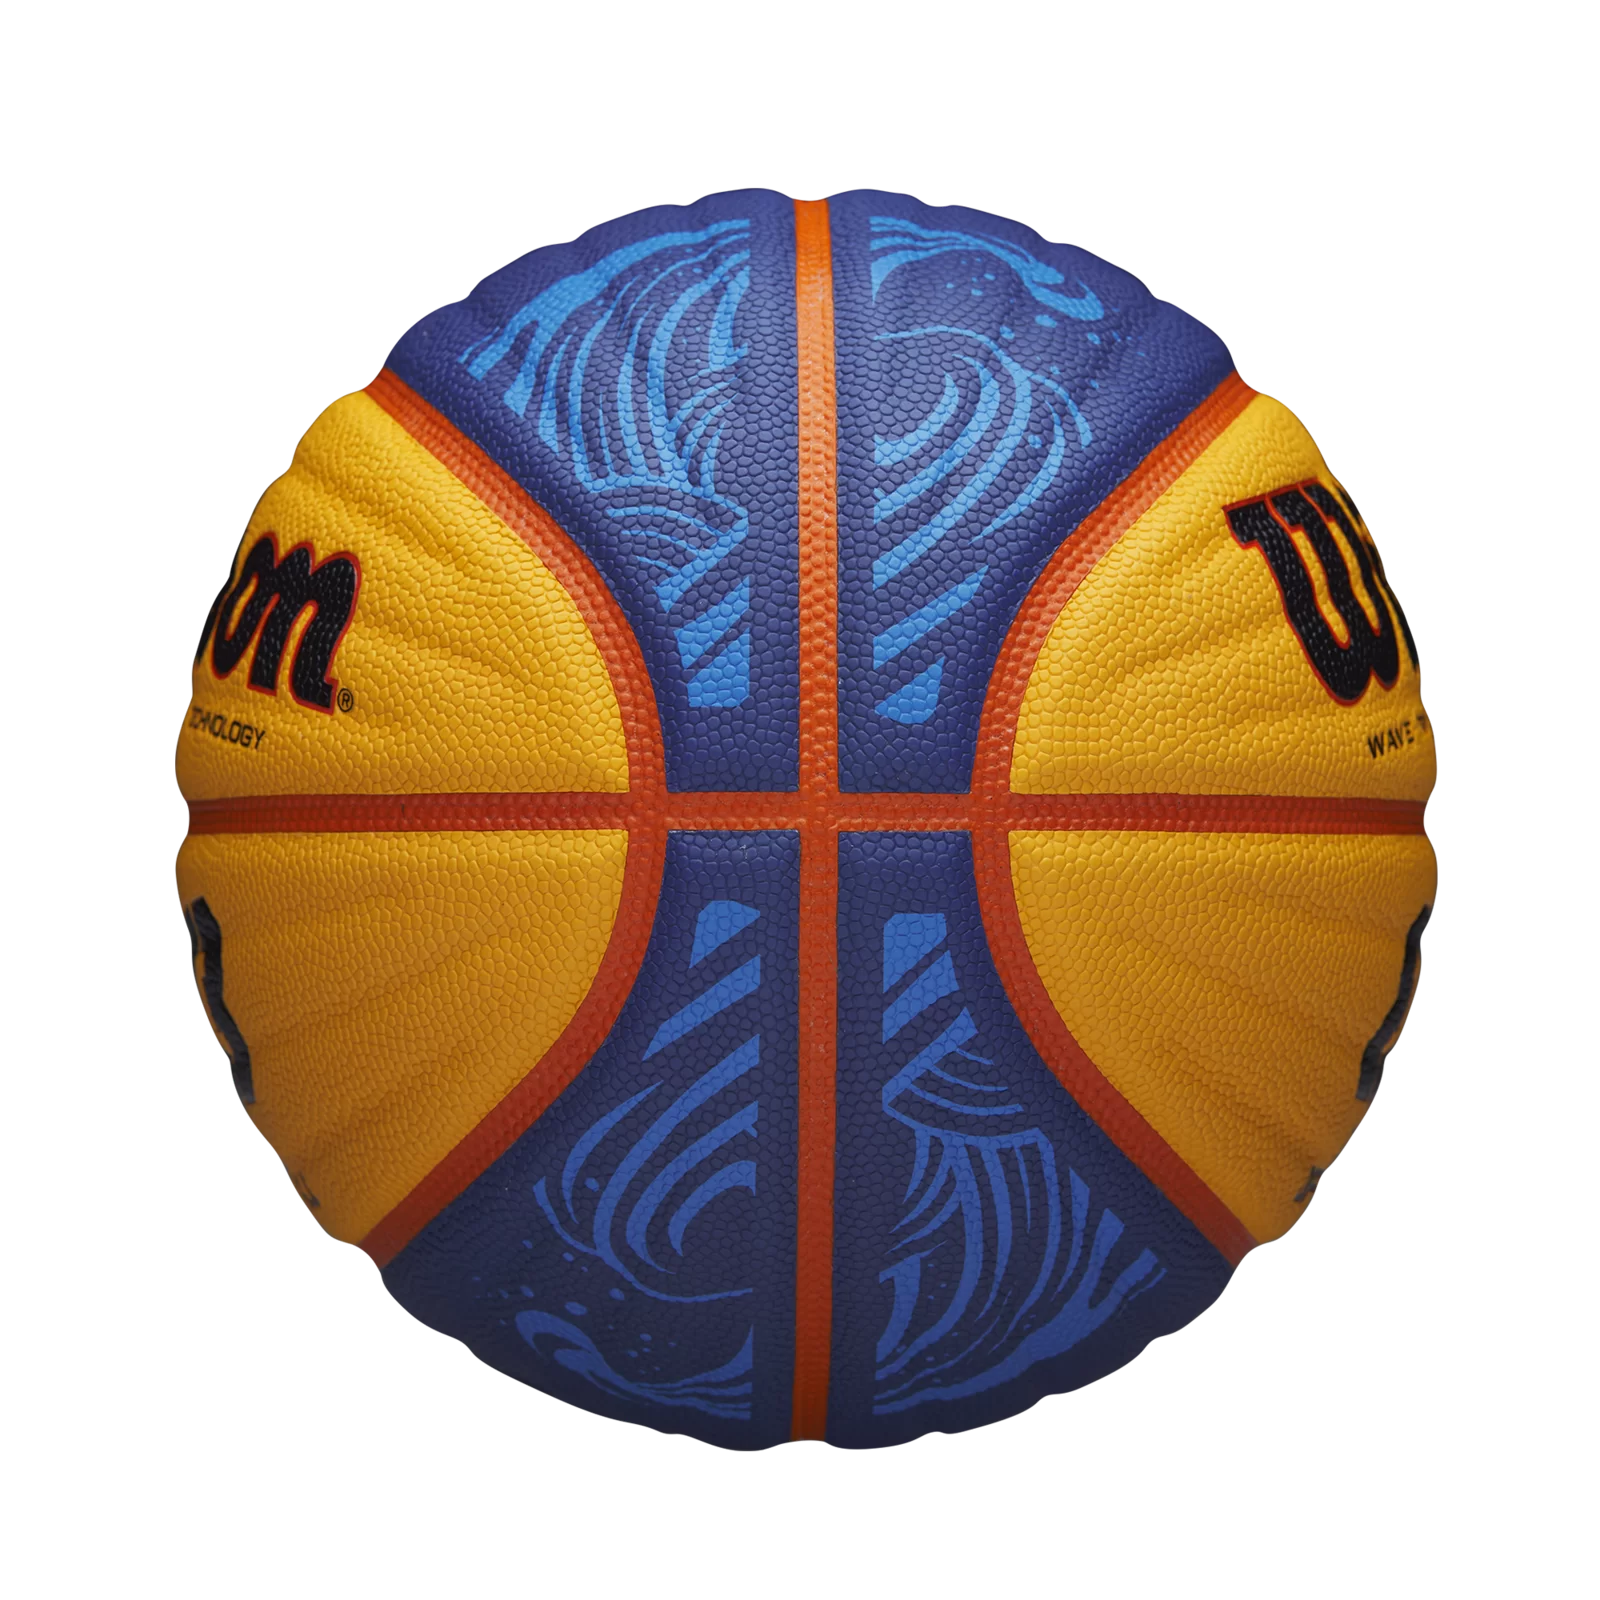 Реальное фото Мяч баскетбольный Wilson FIBA3x3 Official  №6 FIBA  Appr.PU сине-желтый WTB0533XB от магазина СпортСЕ